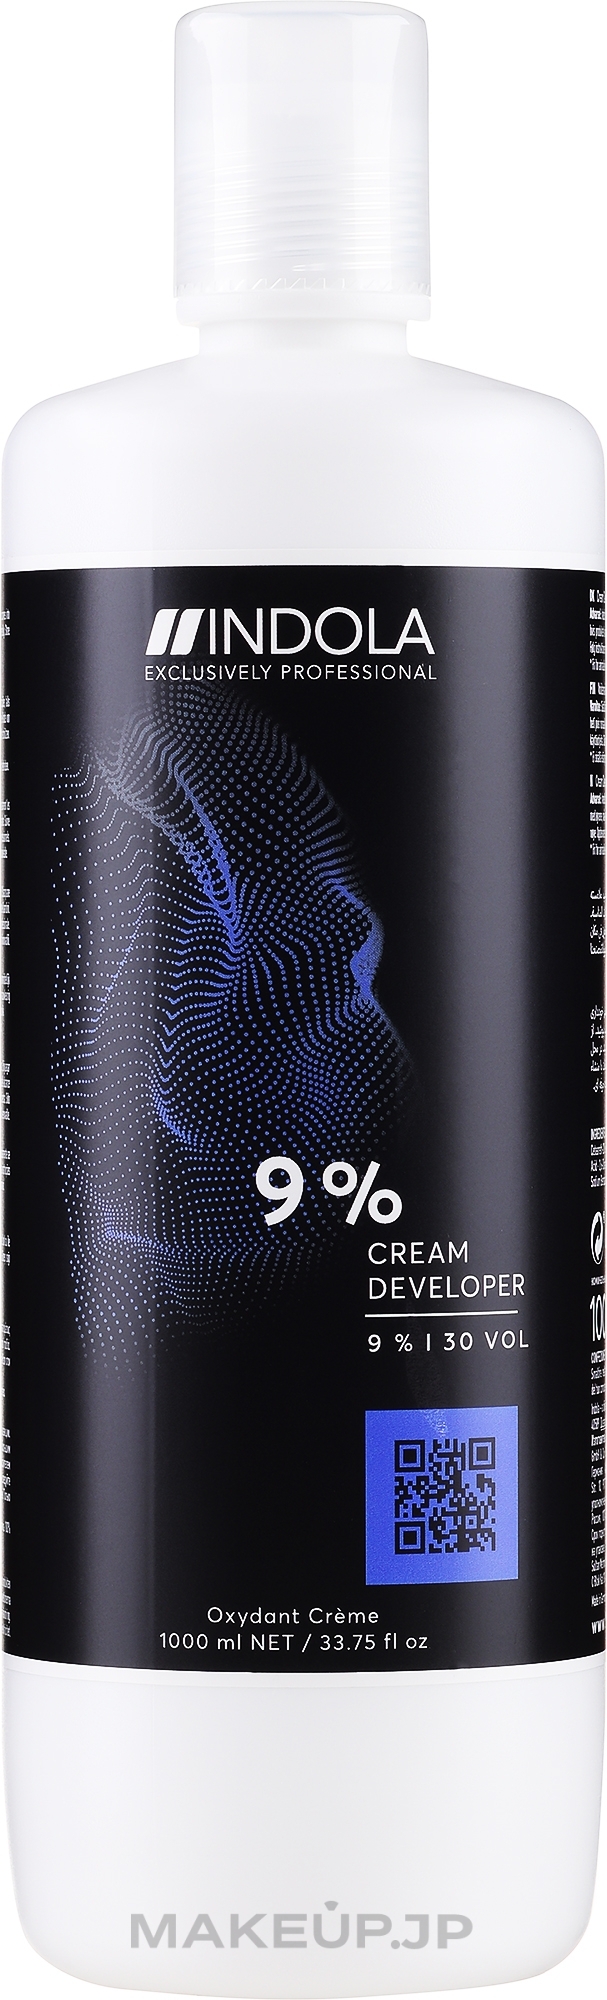 Cream Developer 9% 30 vol - Indola Profession Cream Developer 9% 30 vol — photo 1000 ml